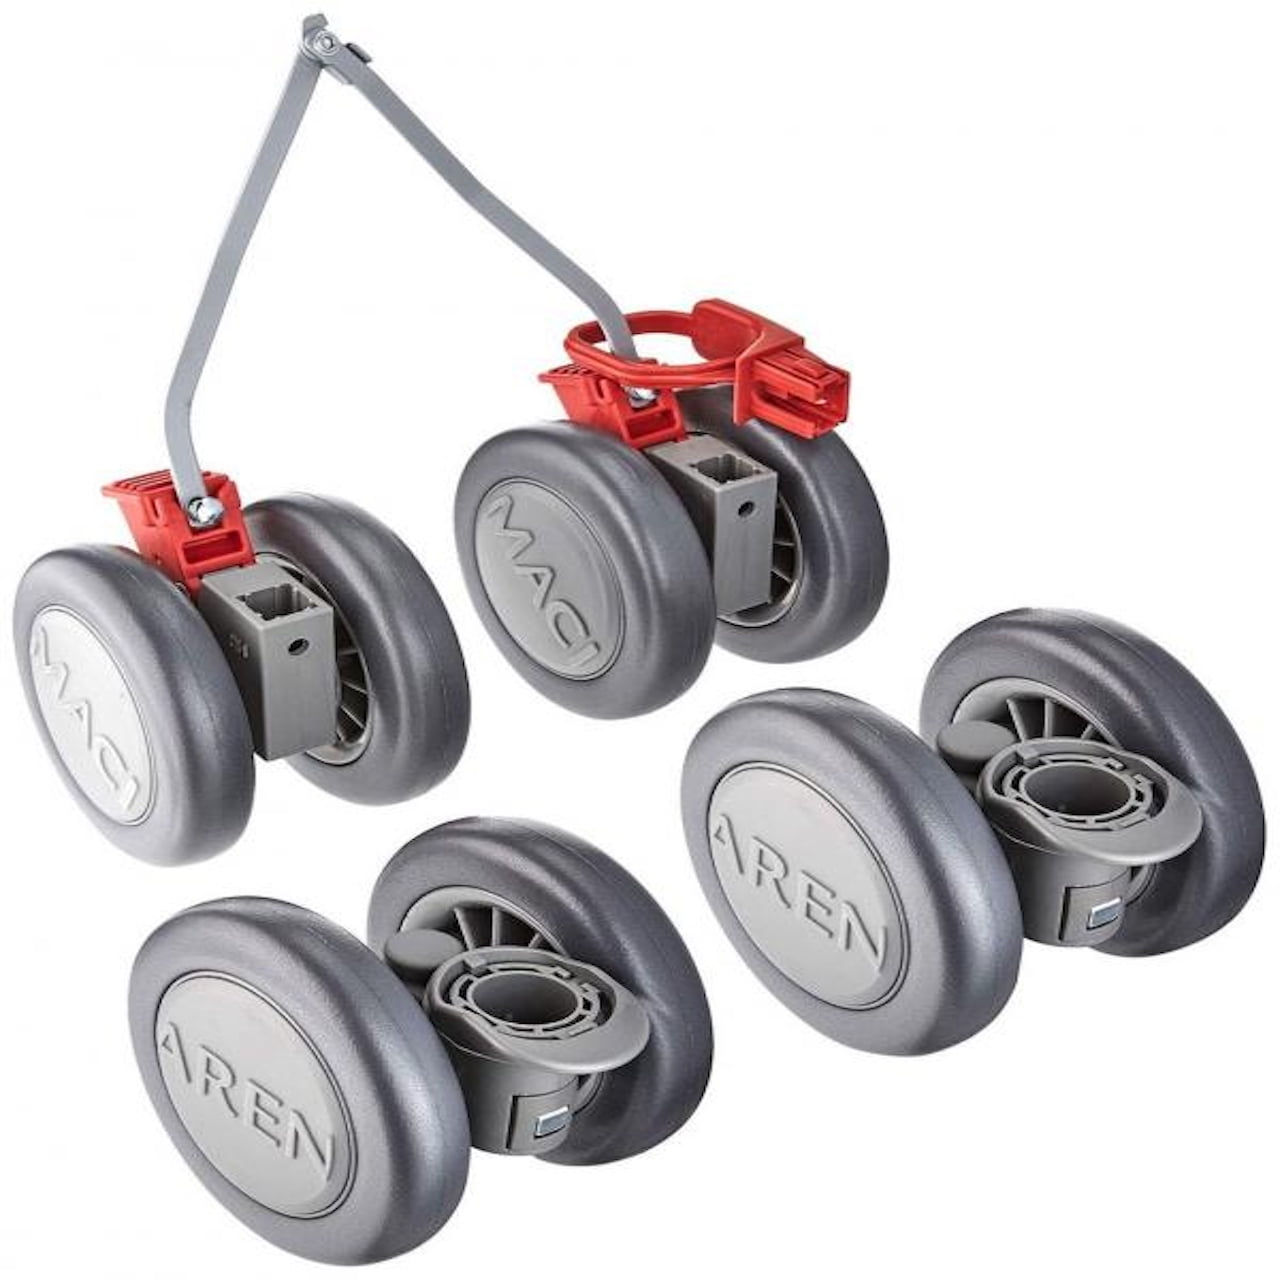 maclaren stroller wheels